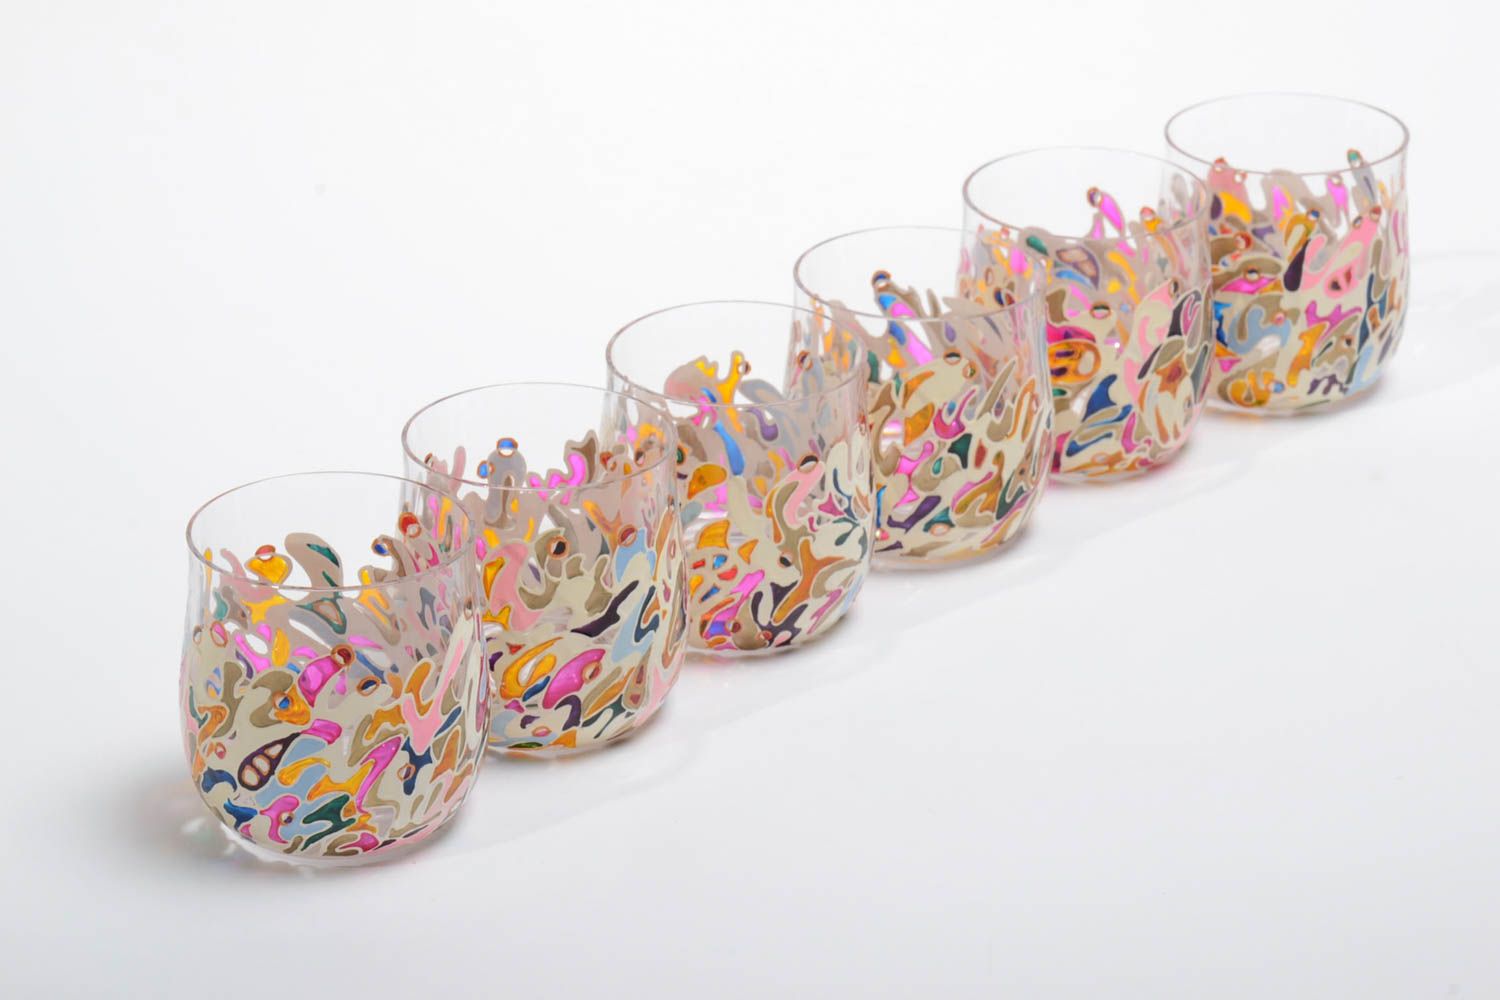 Ensemble de 6 petits verres 10 cl en verre tchèque peints de couleurs faits main photo 5